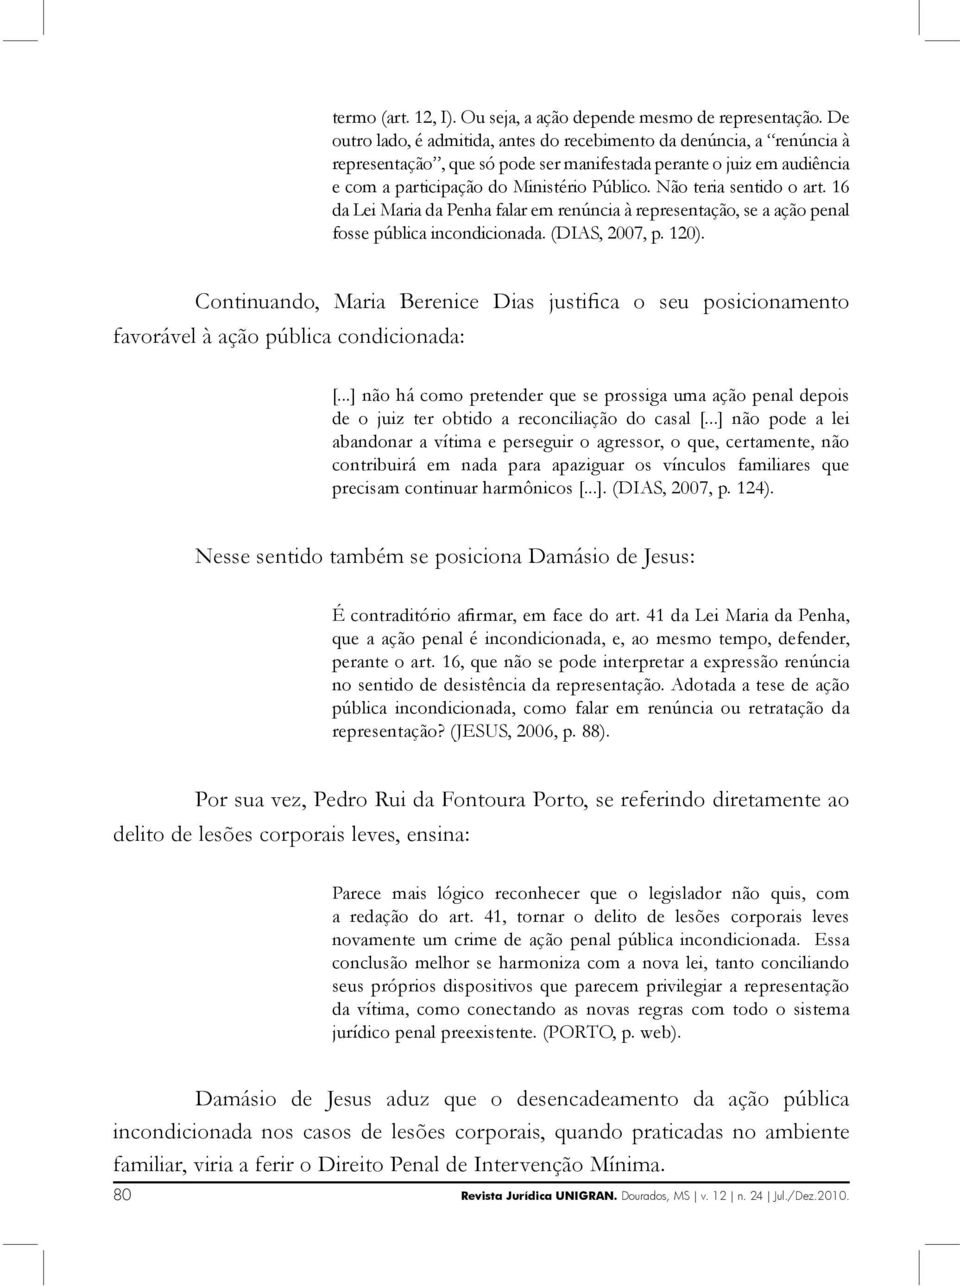 Não teria sentido o art. 16 da Lei Maria da Penha falar em renúncia à representação, se a ação penal fosse pública incondicionada. (DIAS, 2007, p. 120).